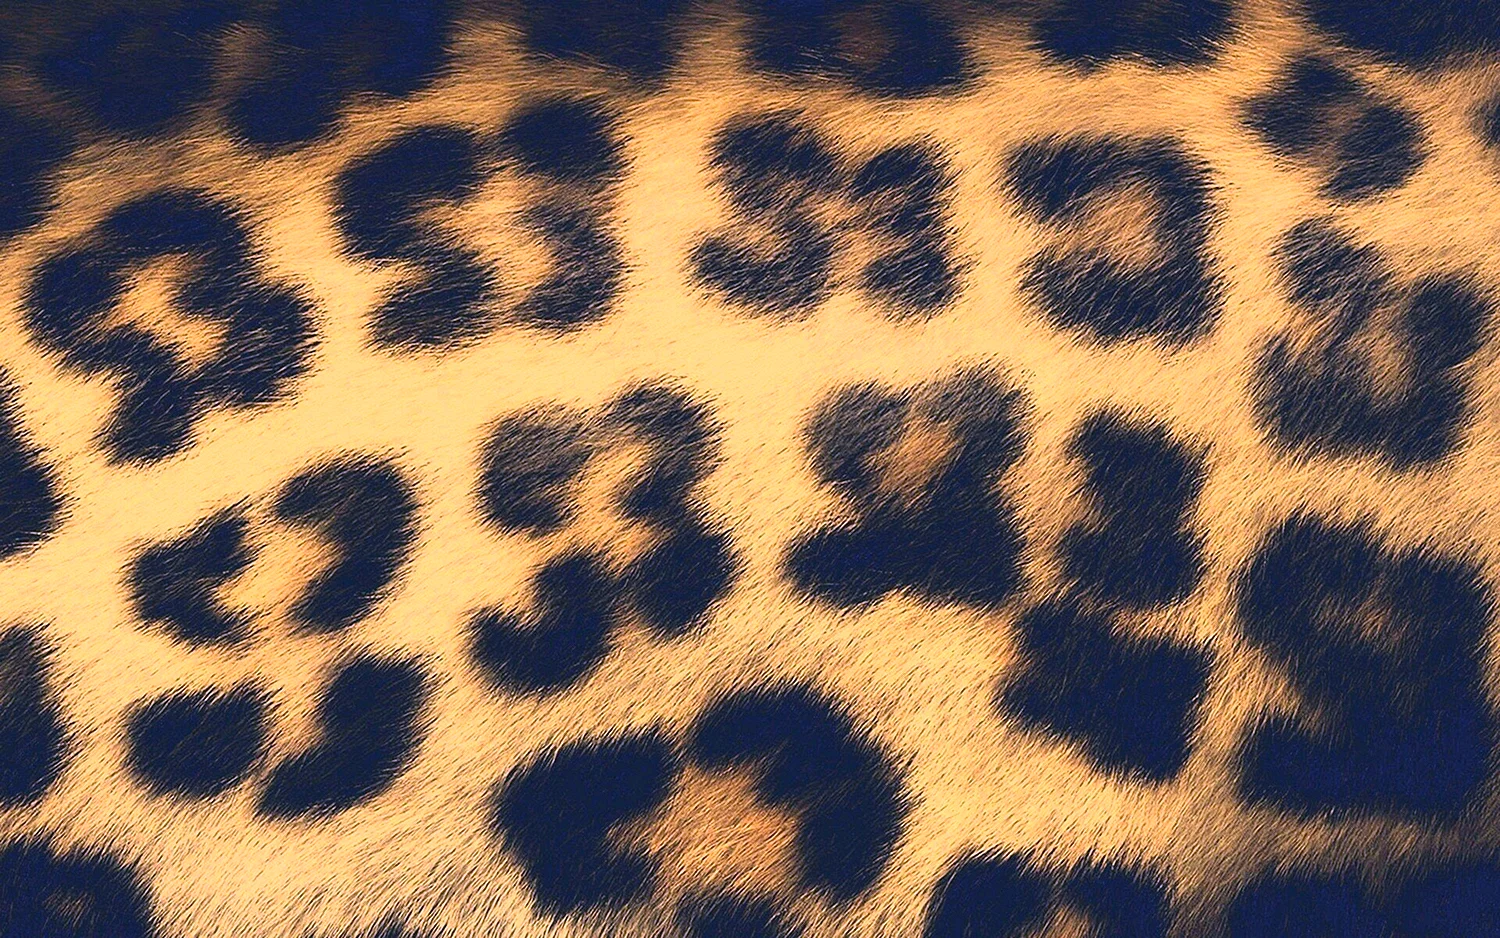 Пятна леопарда